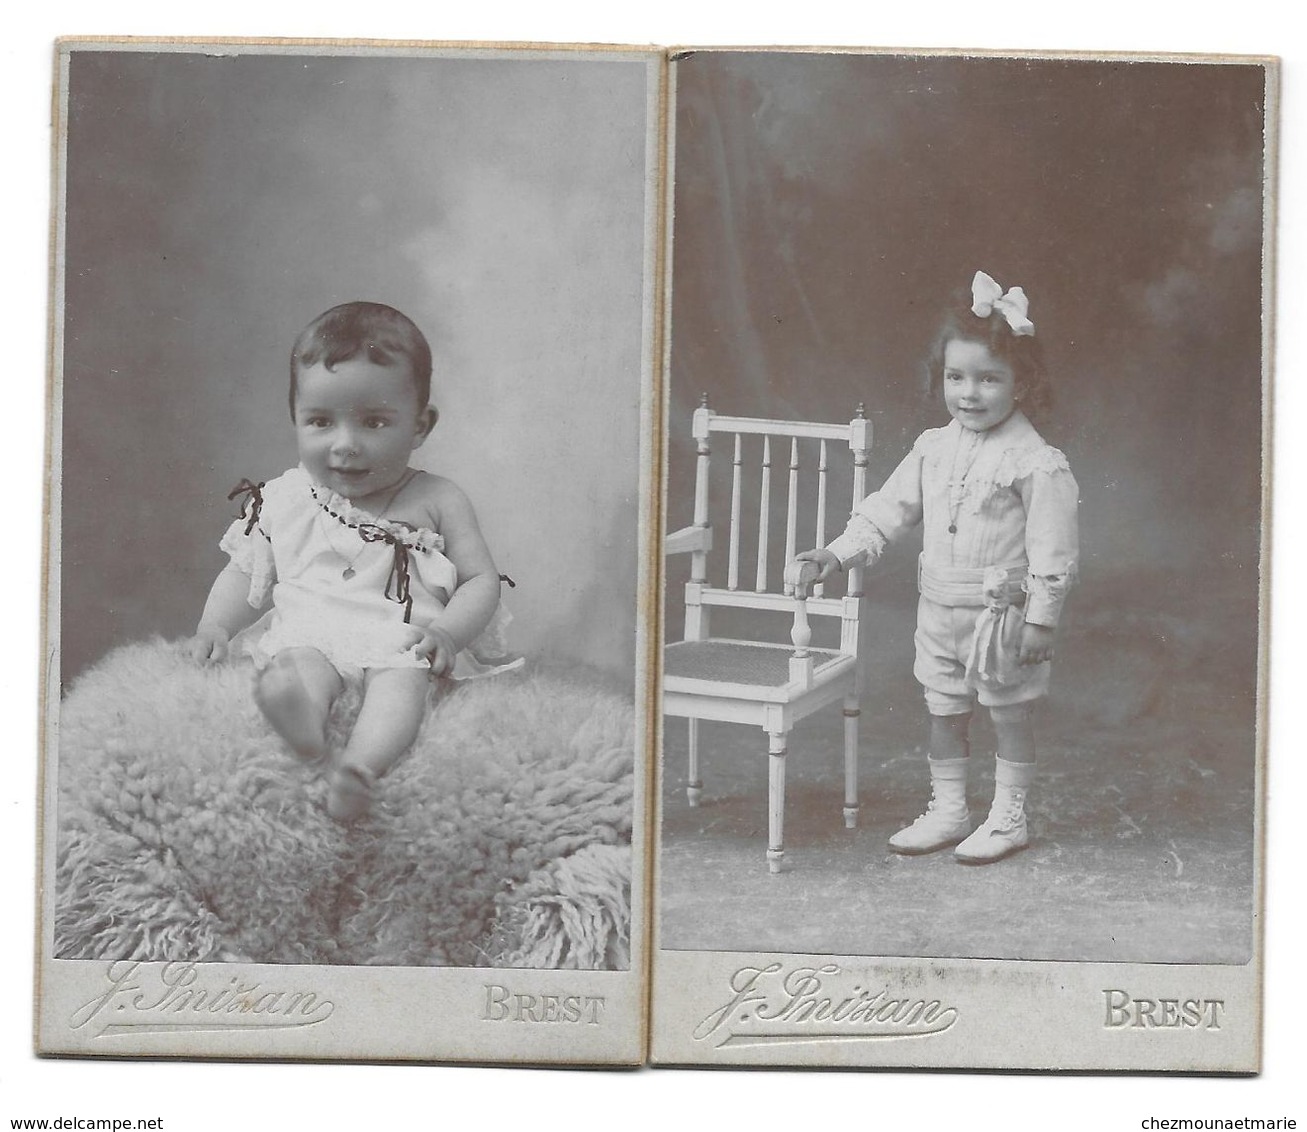 RAYMOND HILLAIRET FUTUR COMMISSAIRE DE LA MARINE NE EN 1906 A BREST - CDV PHOTO INIZAN LOT DE 2 - Famous People